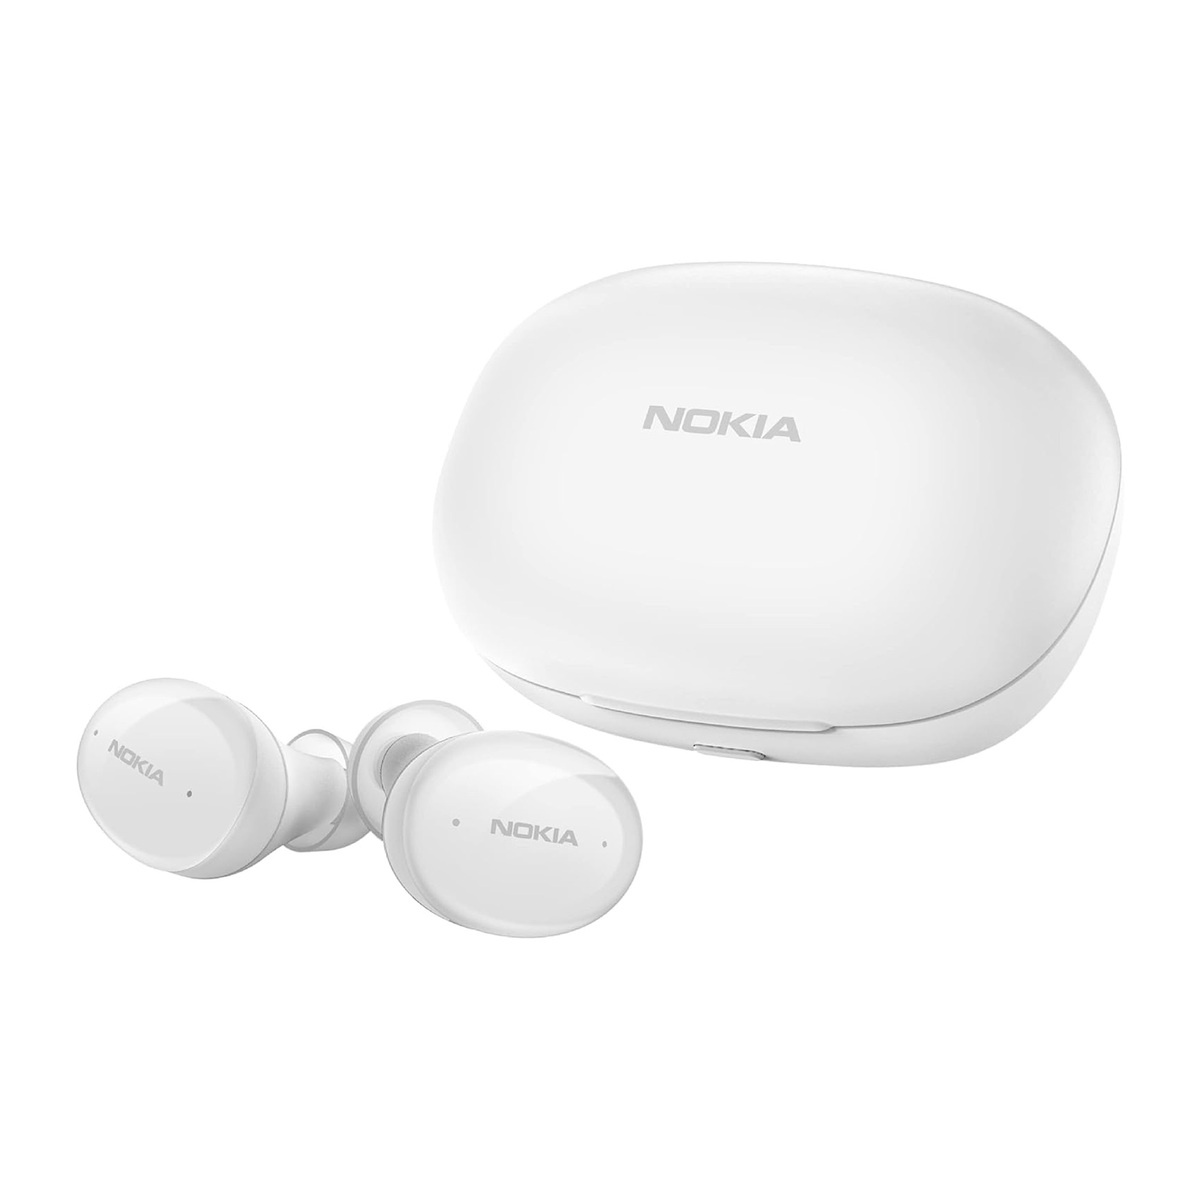 Nokia In-Ear True Wireless Earbuds, White, TWS-411